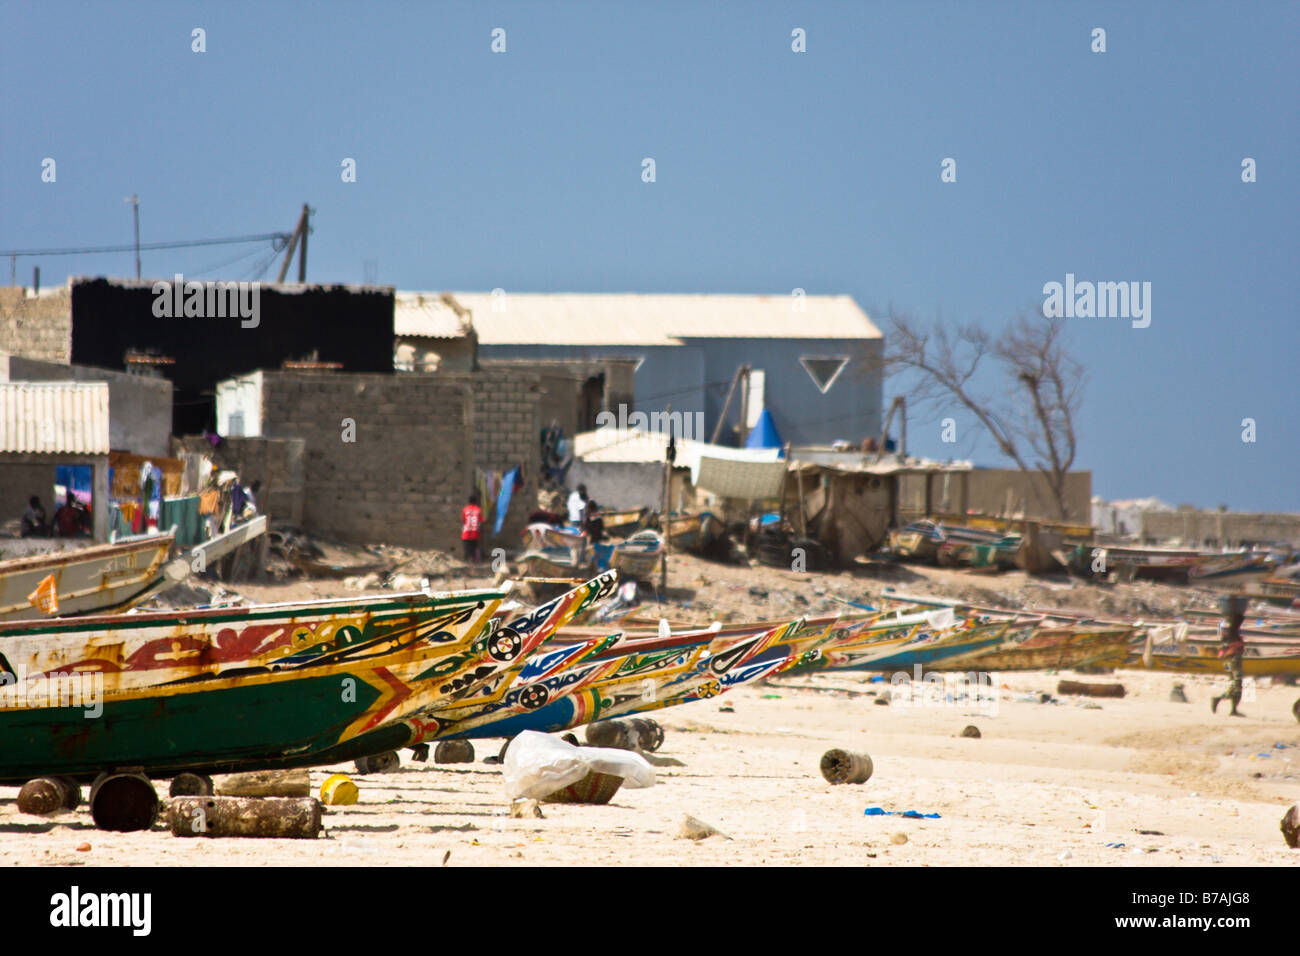 Les bateaux peints de couleurs vives bordent la plage de Yoff, un village de pêcheurs à 30 minutes à l'extérieur de la capitale du Sénégal ville de Dakar. Banque D'Images